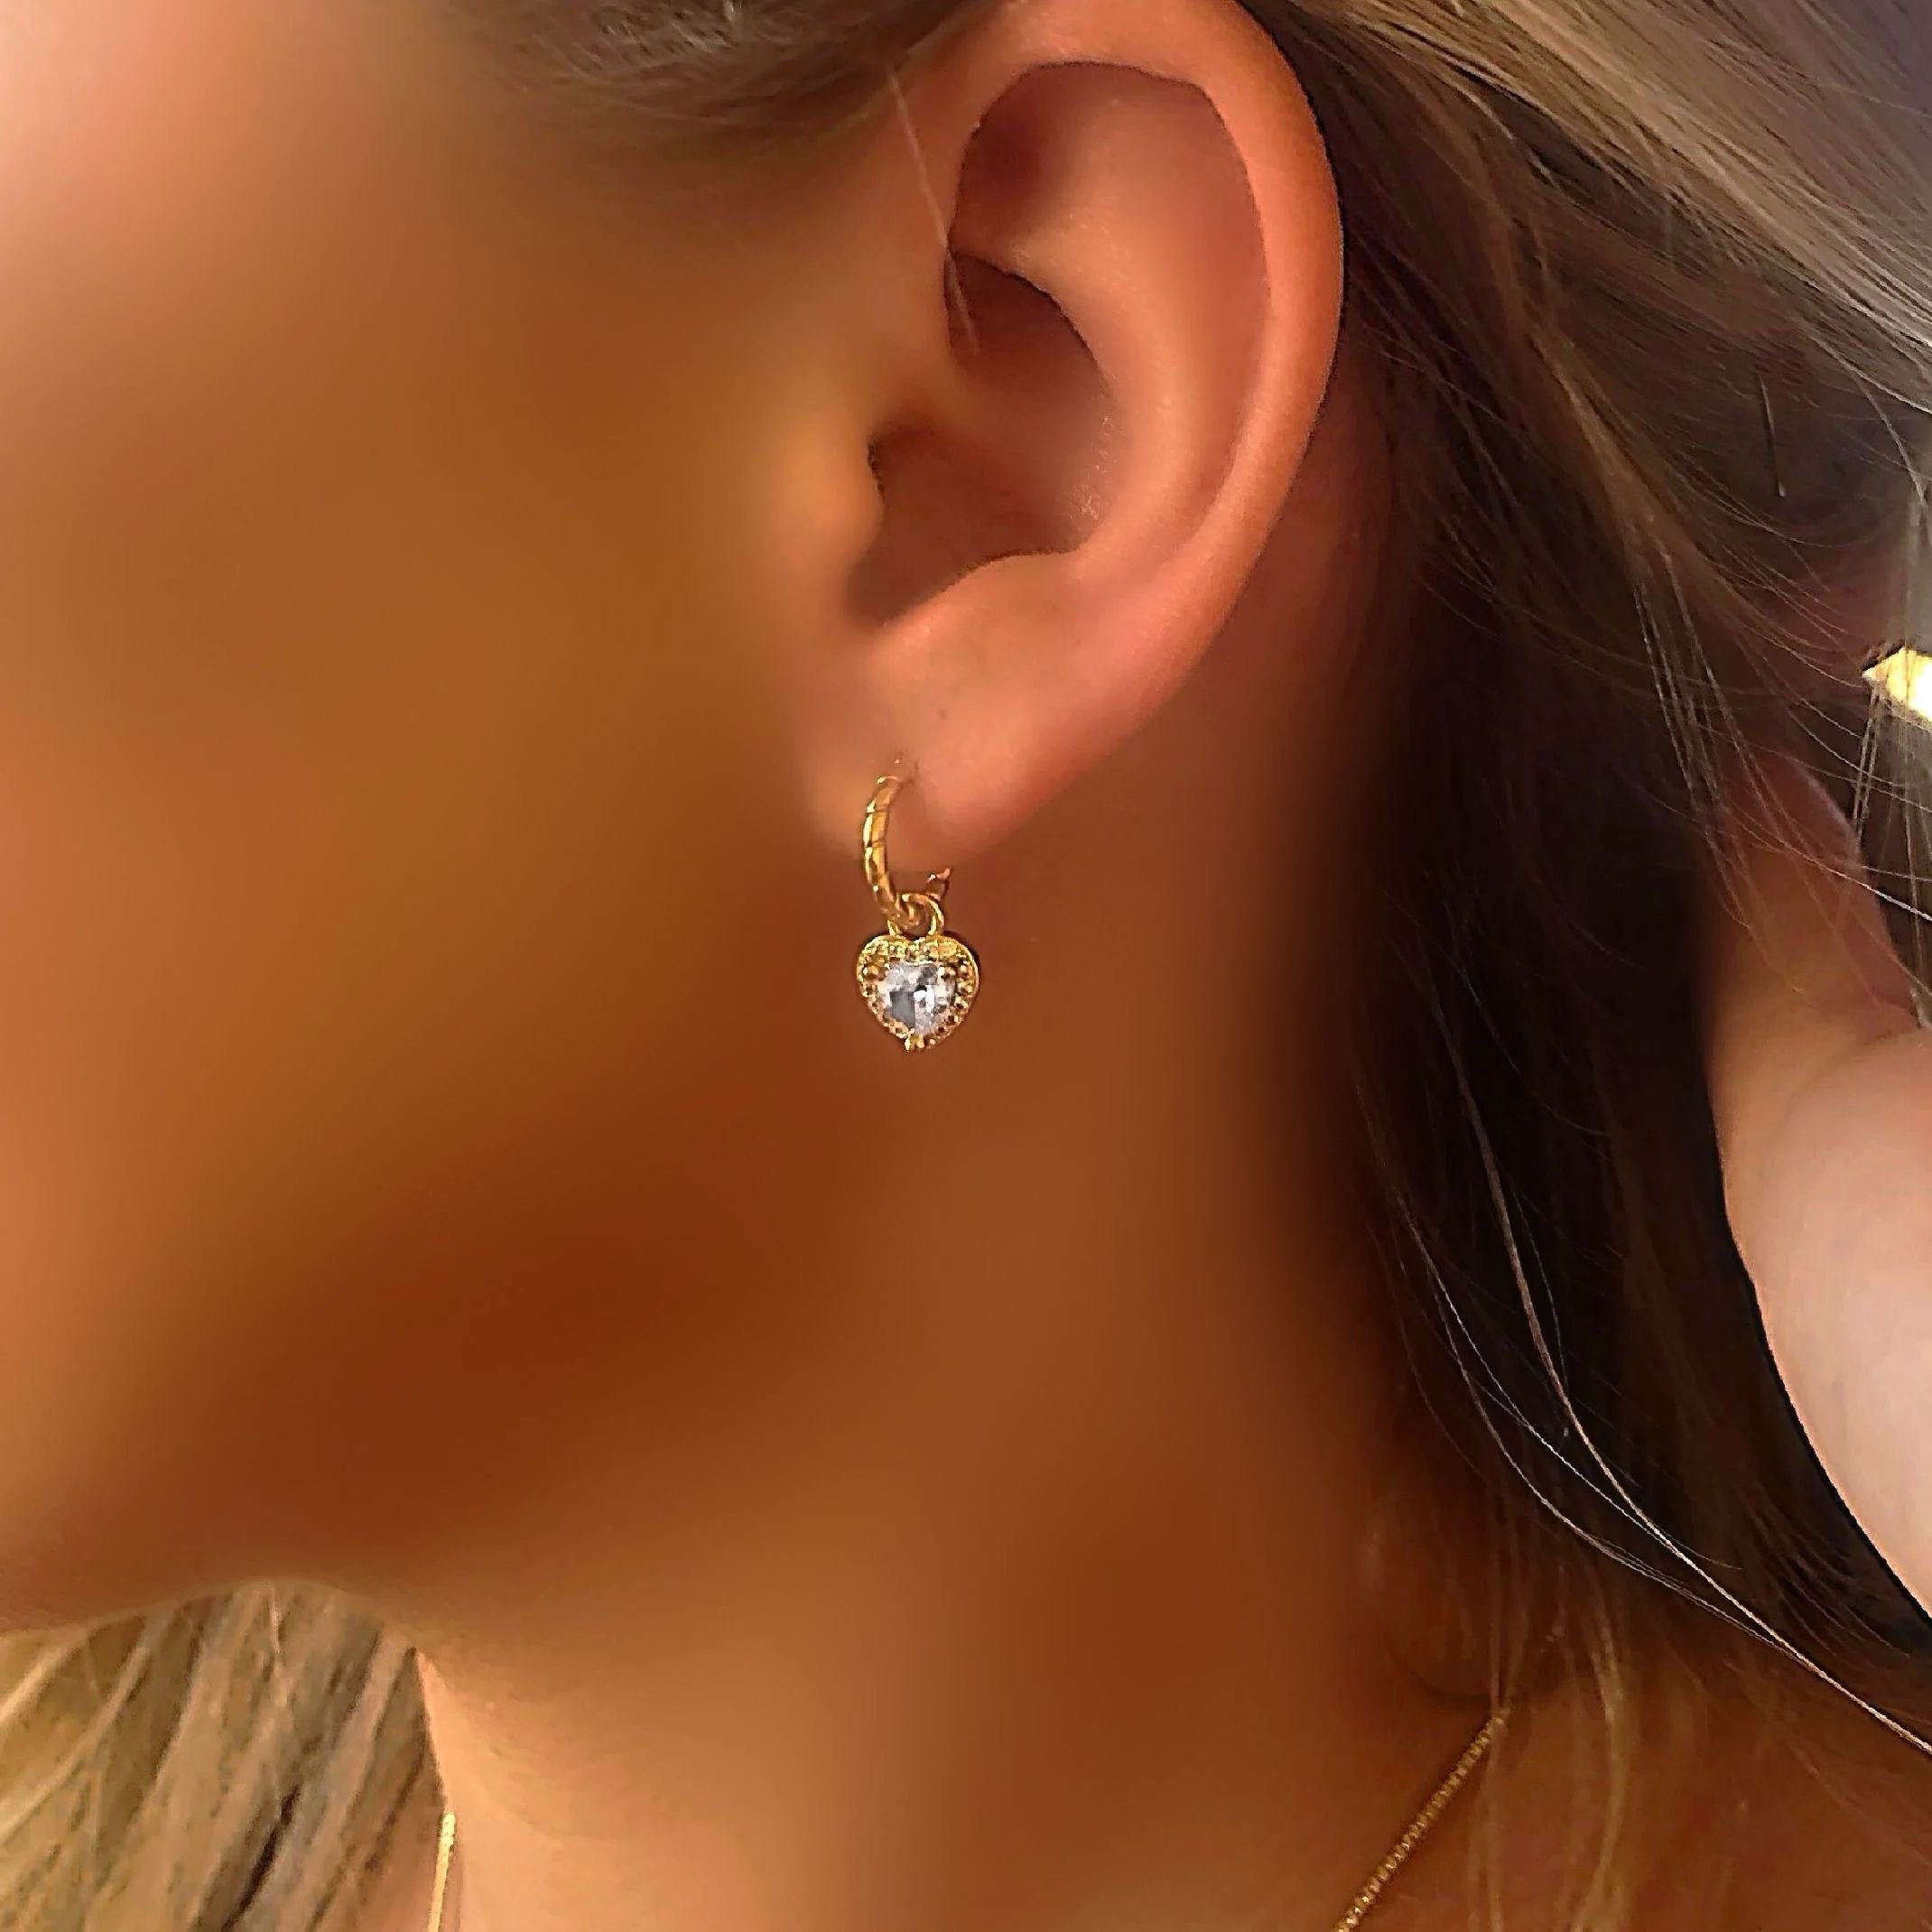 Diamond heart earrings 